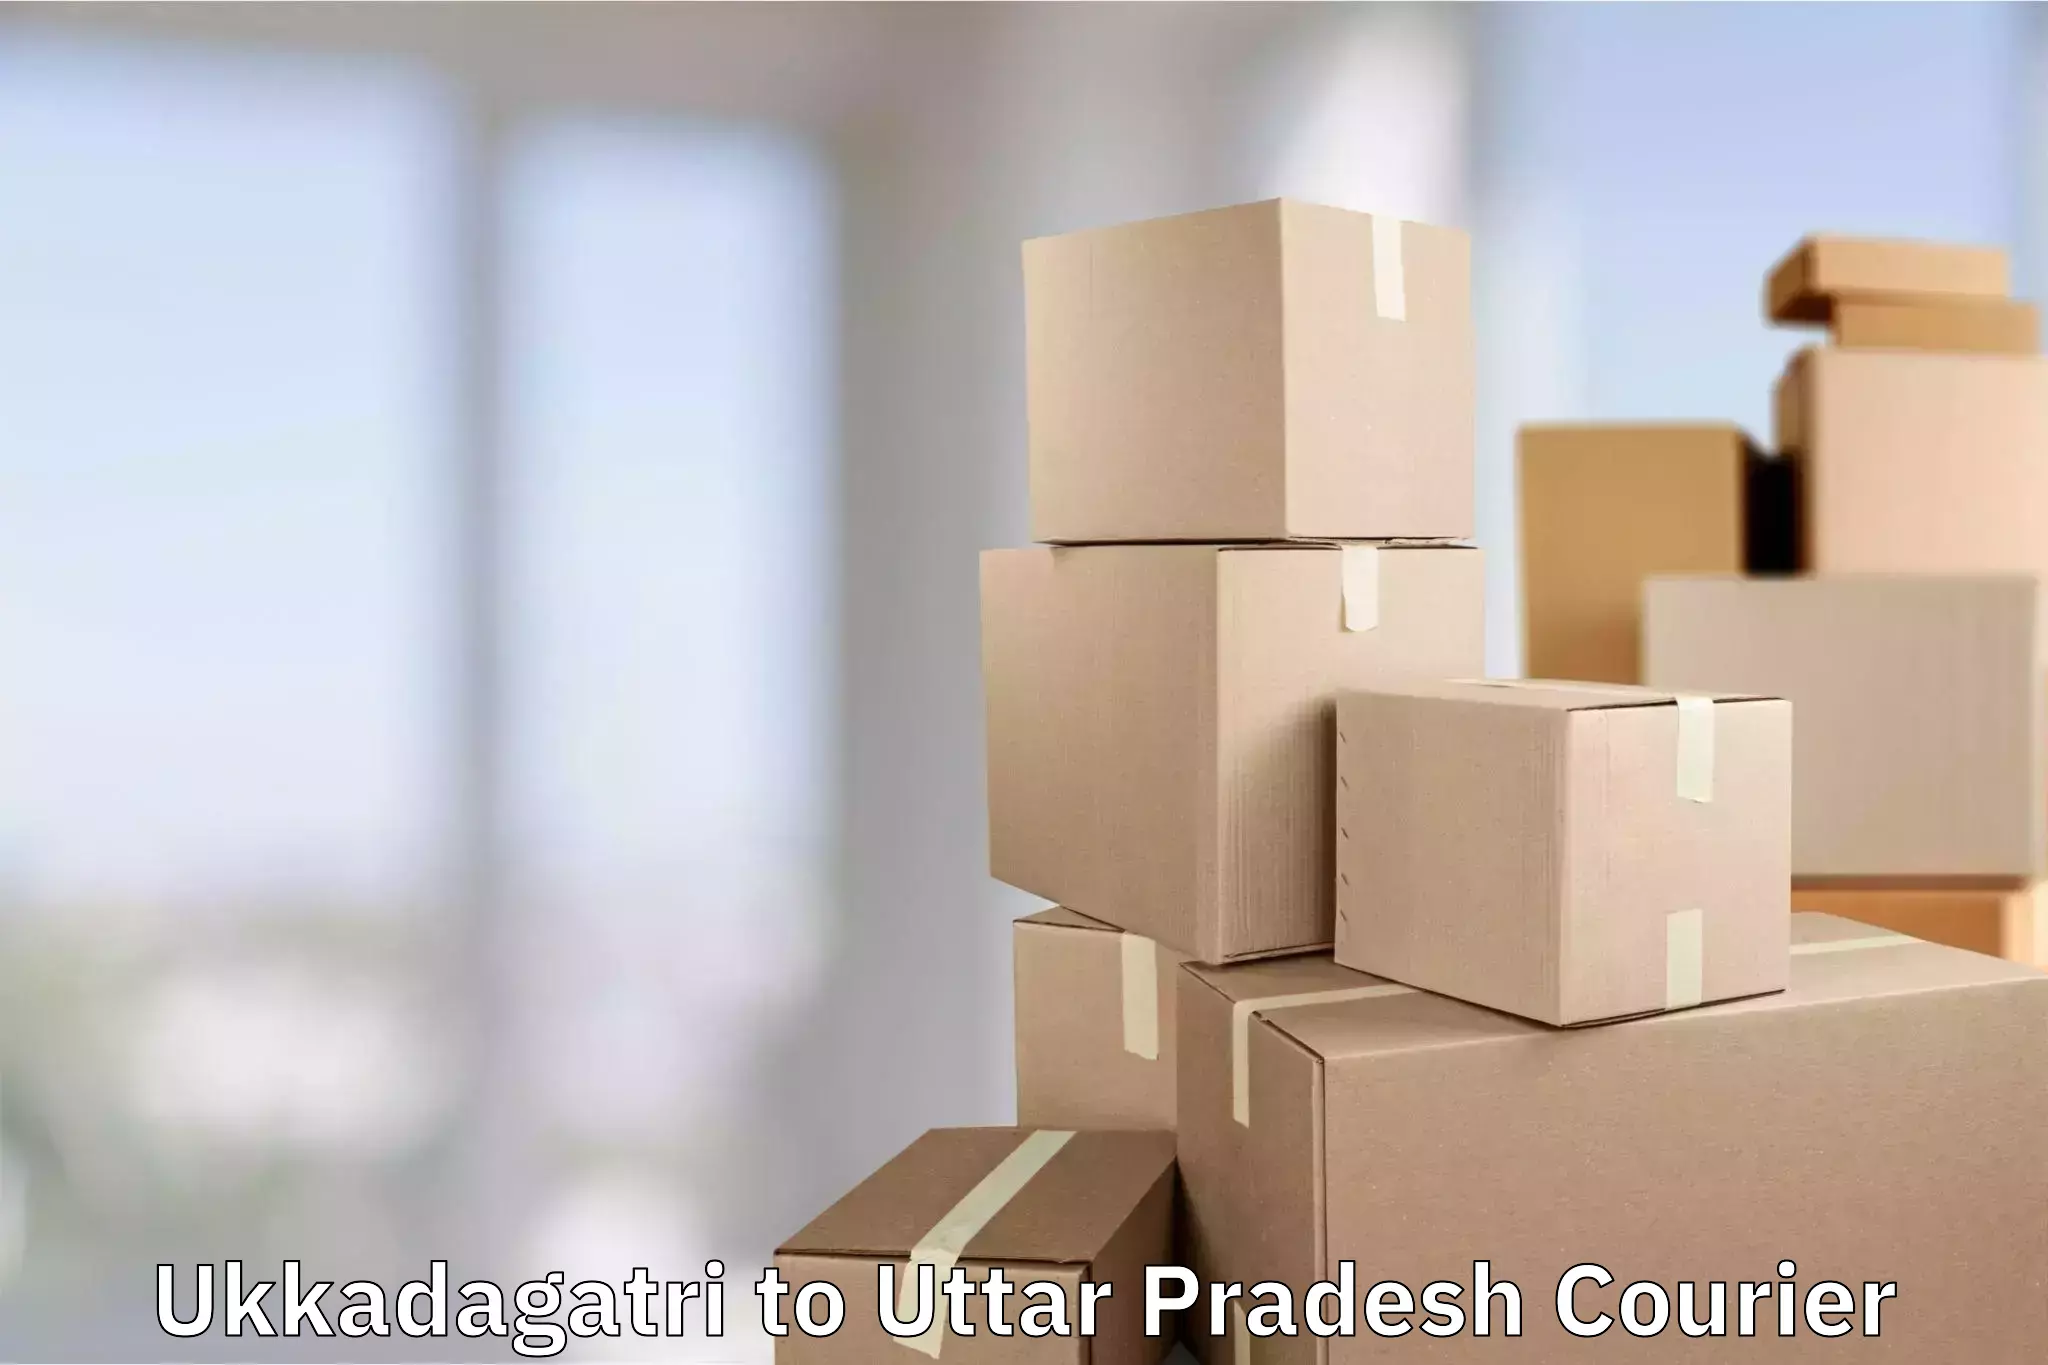 Luggage shipping solutions in Ukkadagatri to Hamirpur Uttar Pradesh